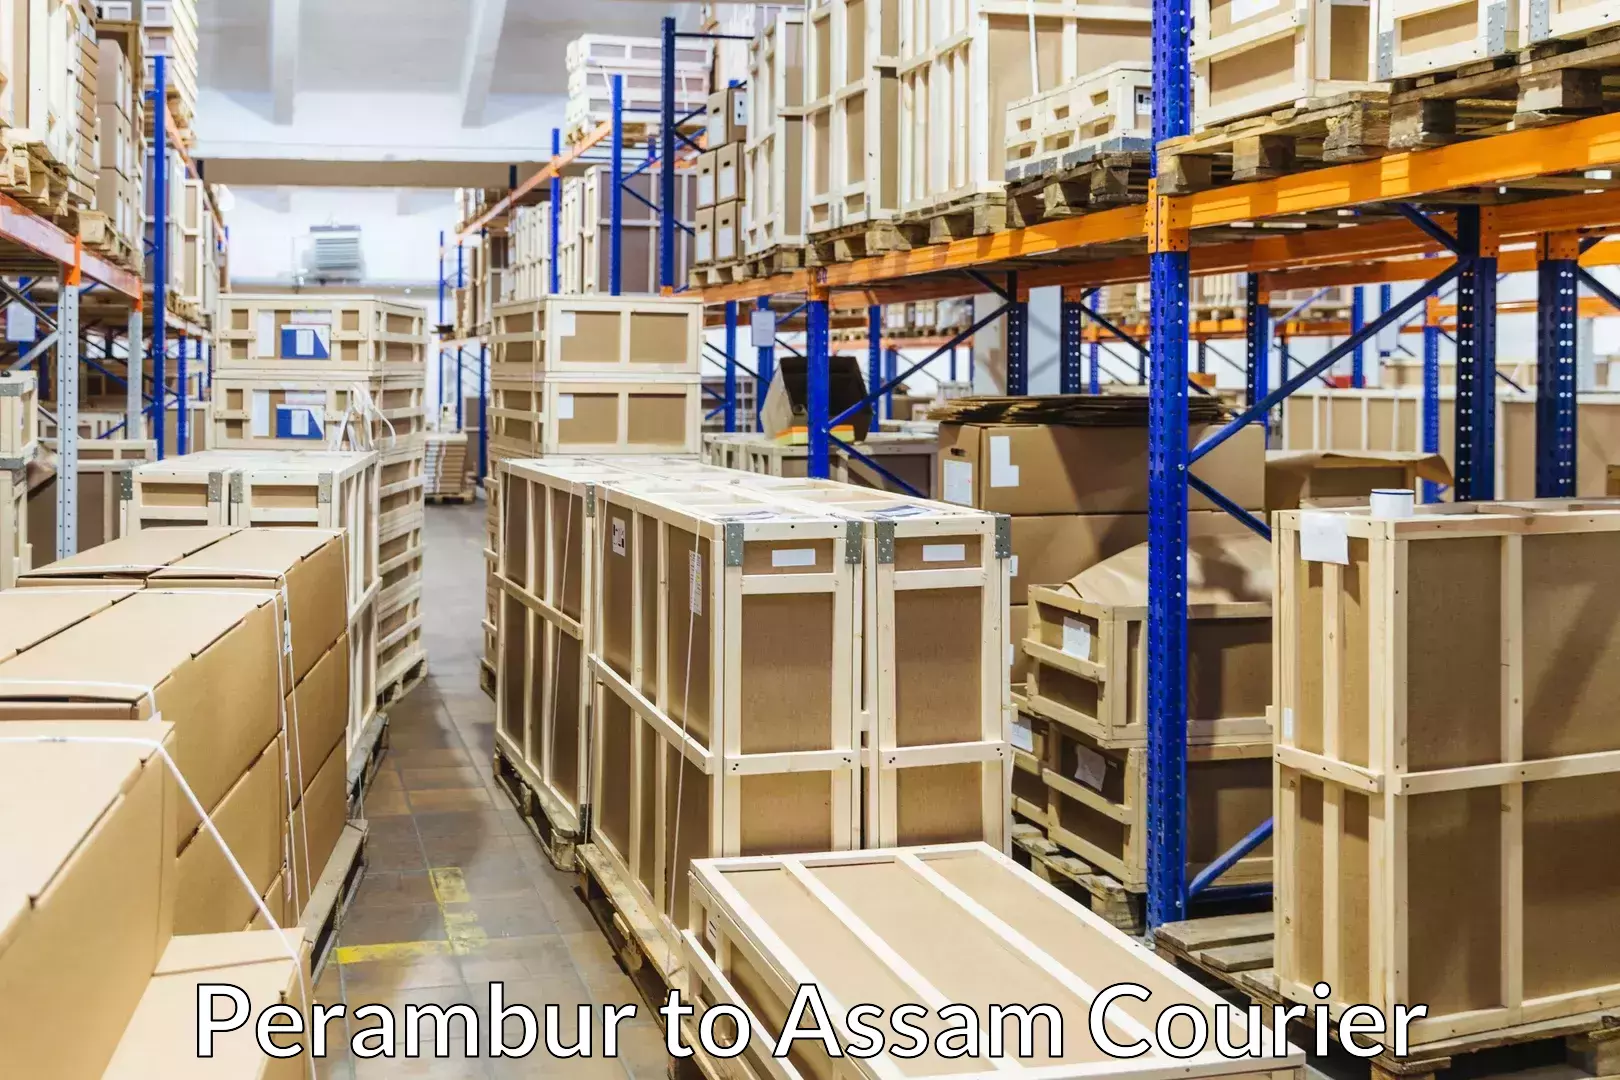 Furniture transport service Perambur to Assam